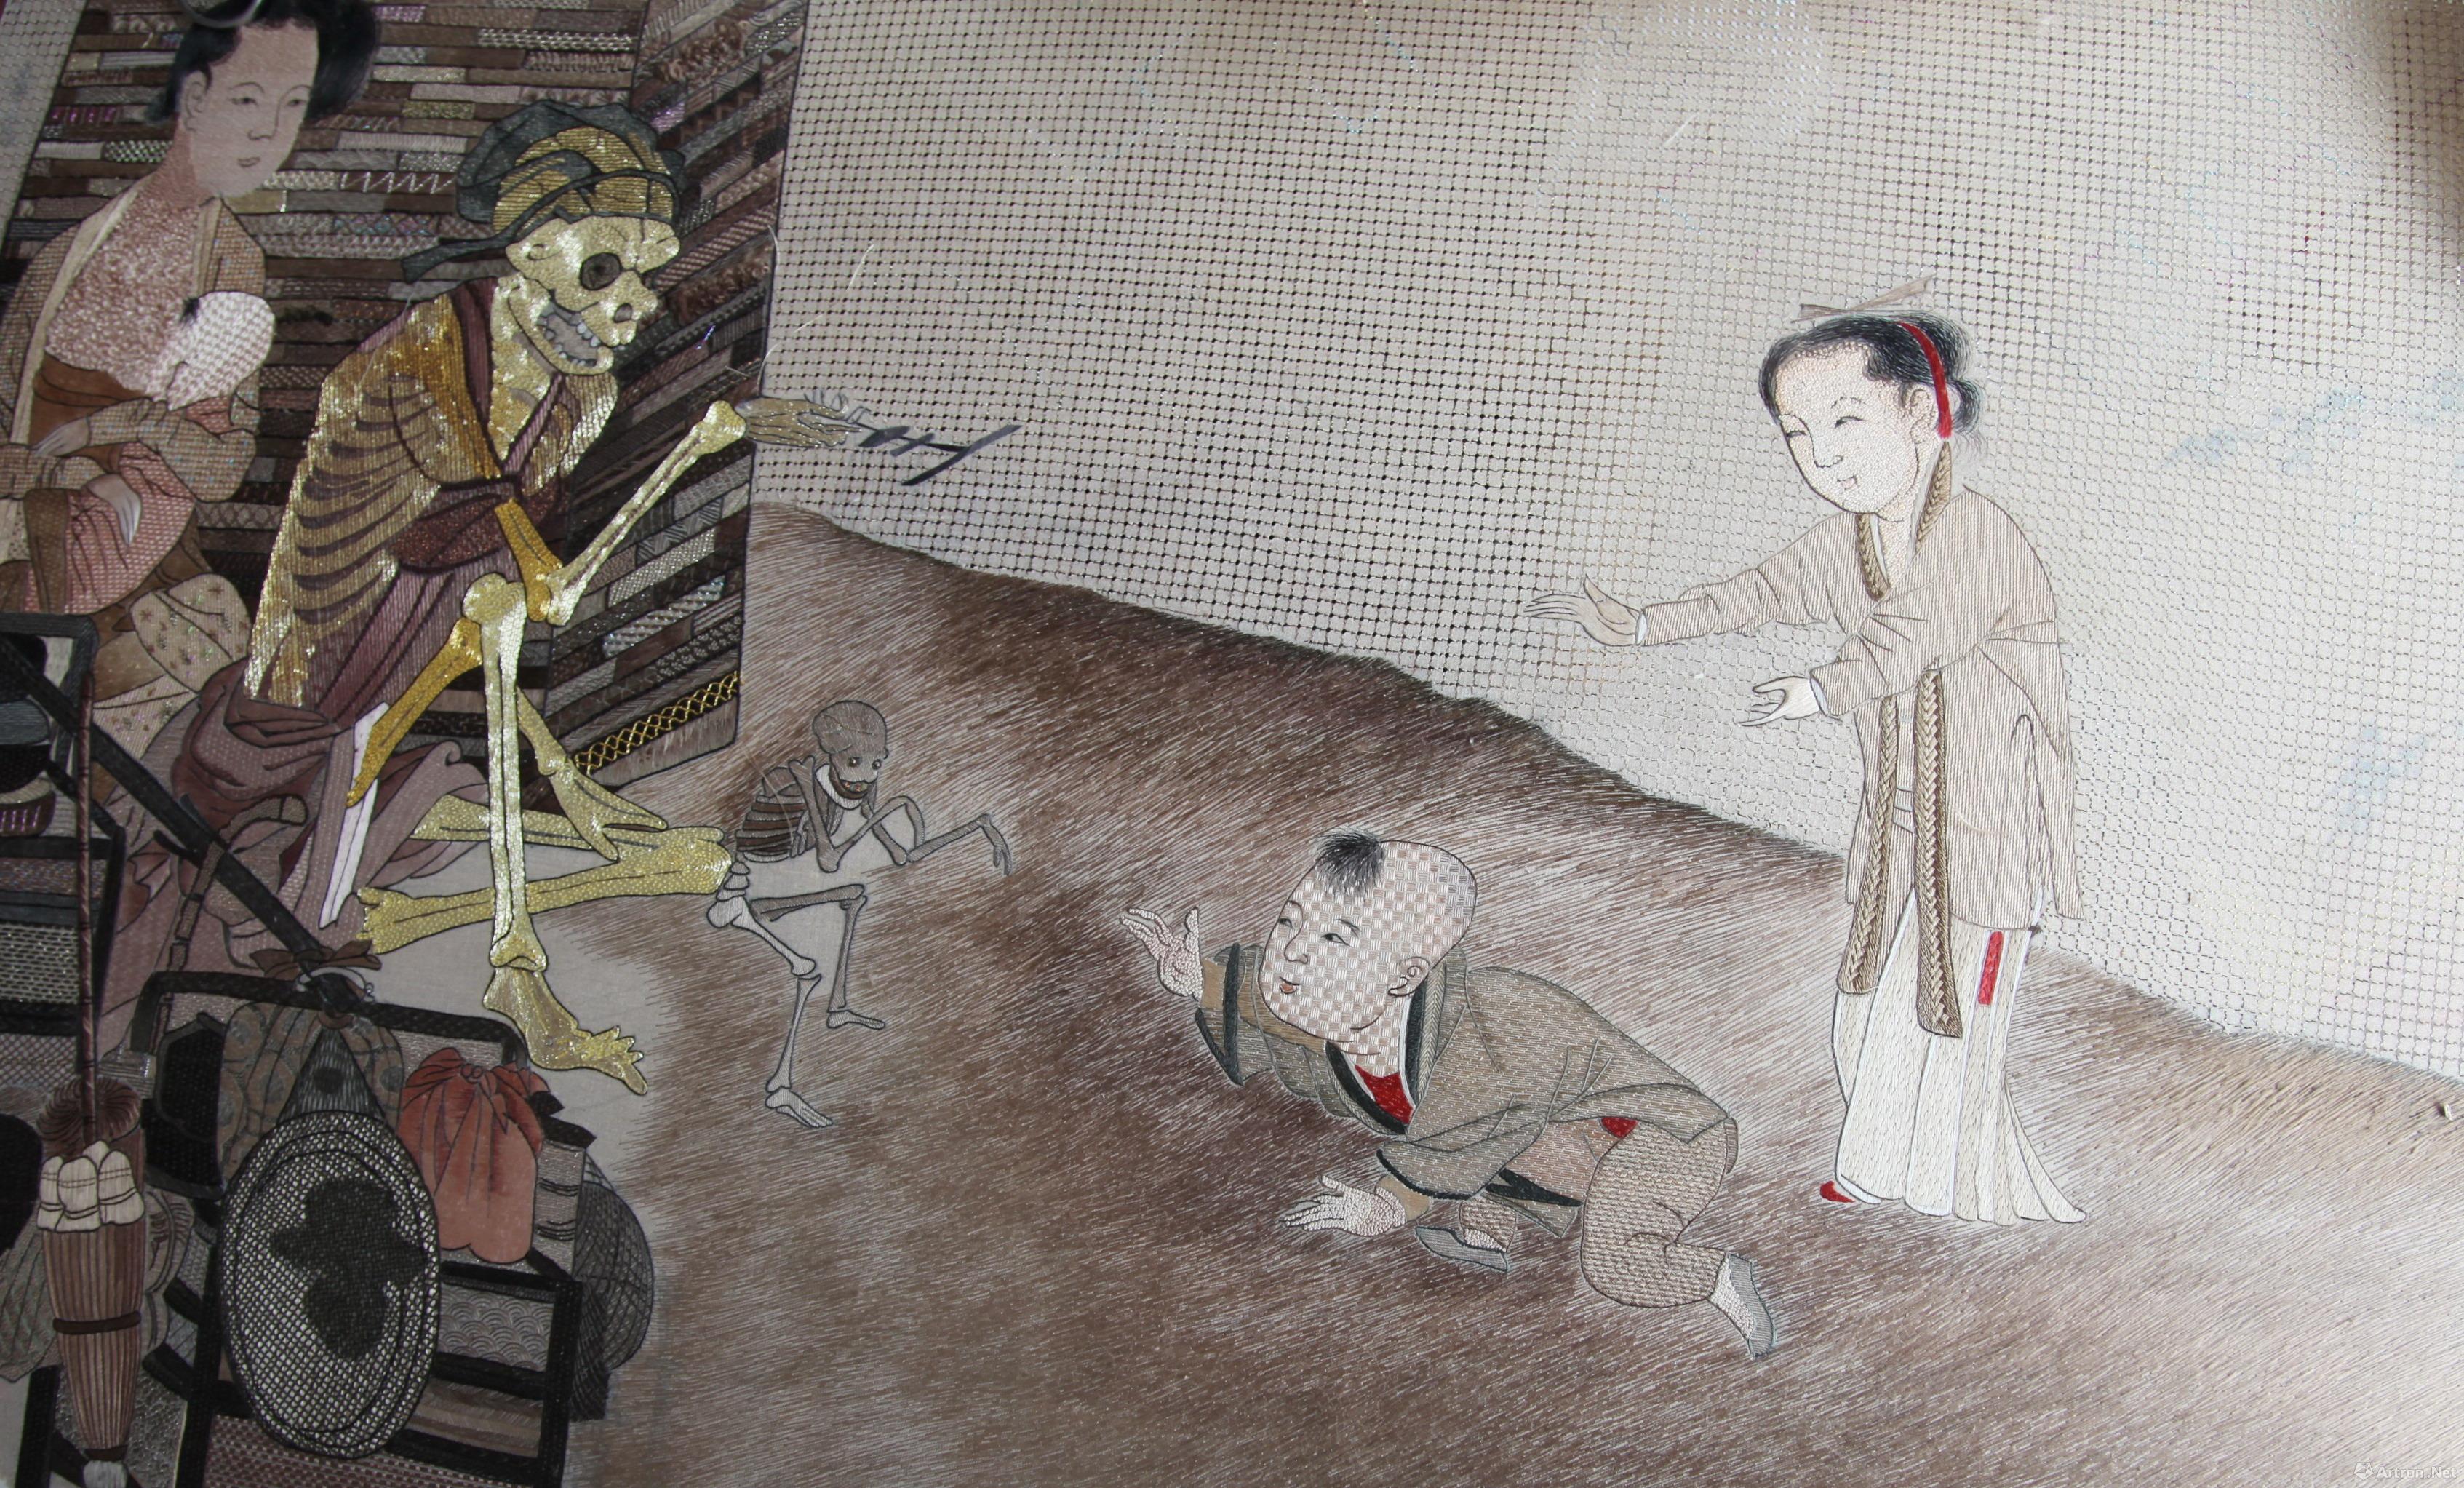 向死而生 不息永恒 ——第57届威尼斯国际艺术双年展苏绣《骷髅幻戏